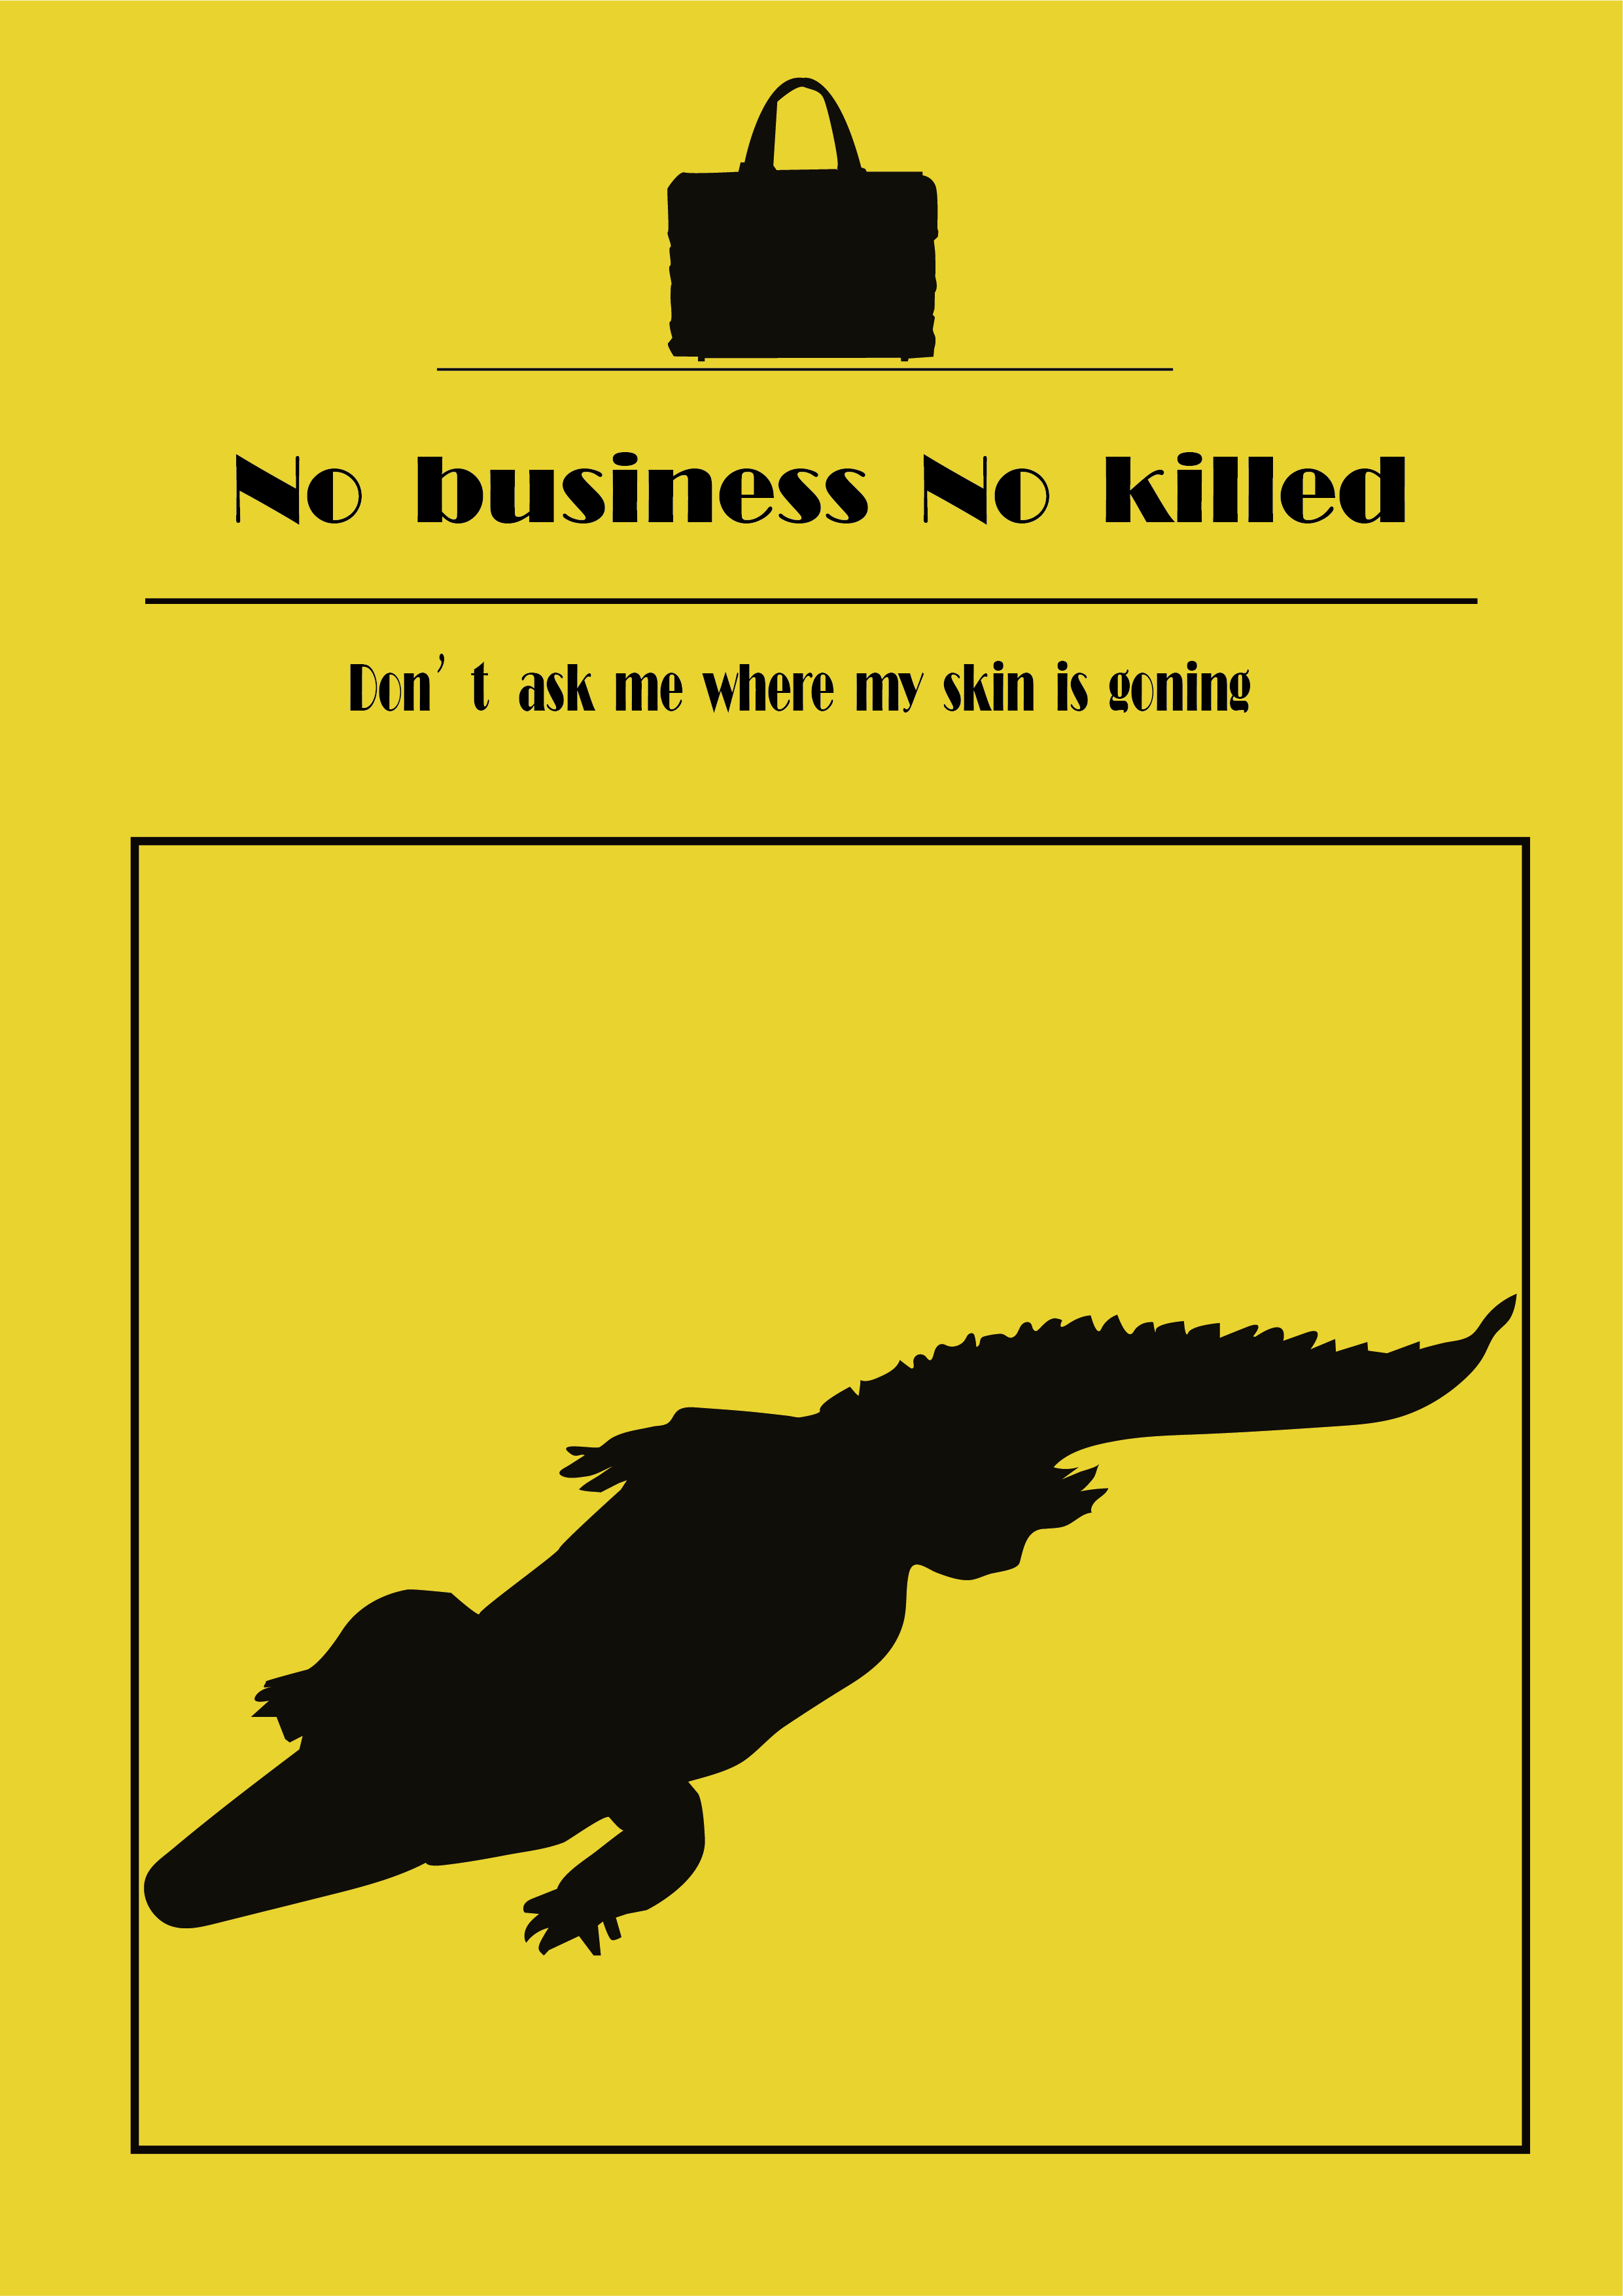 保护动物海报设计英文图片